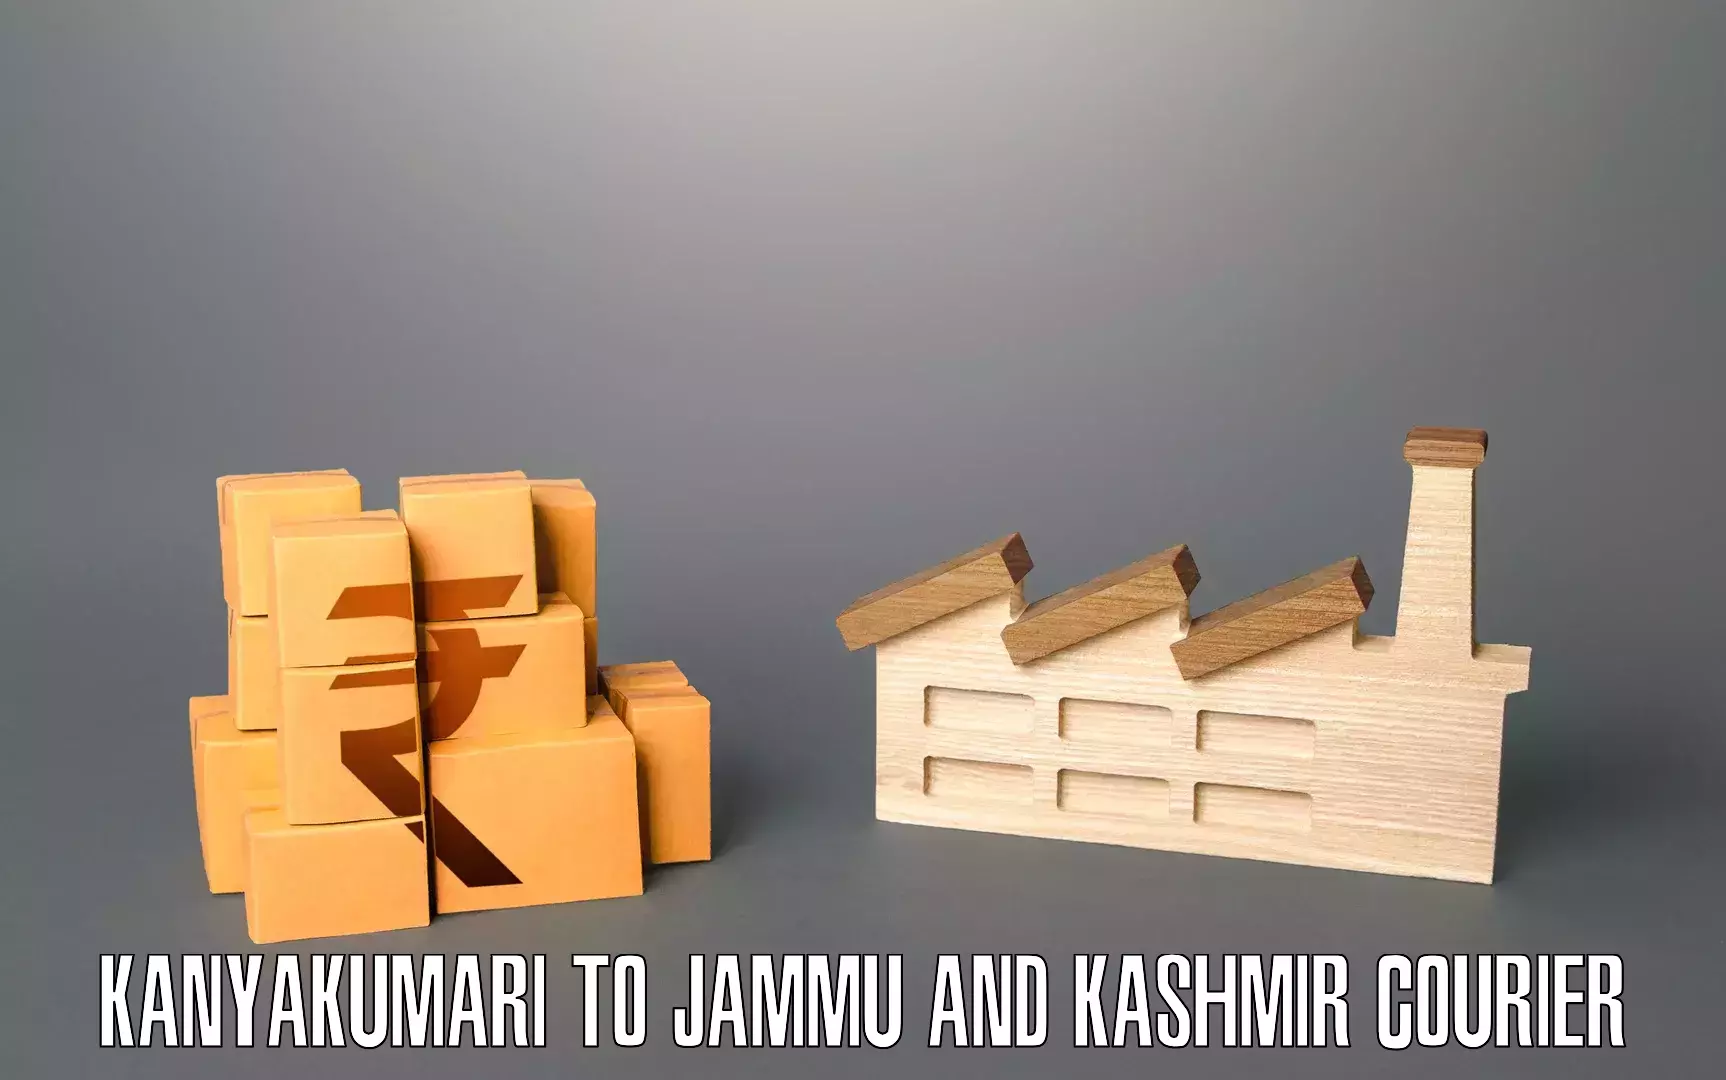 Furniture relocation experts Kanyakumari to Jammu and Kashmir